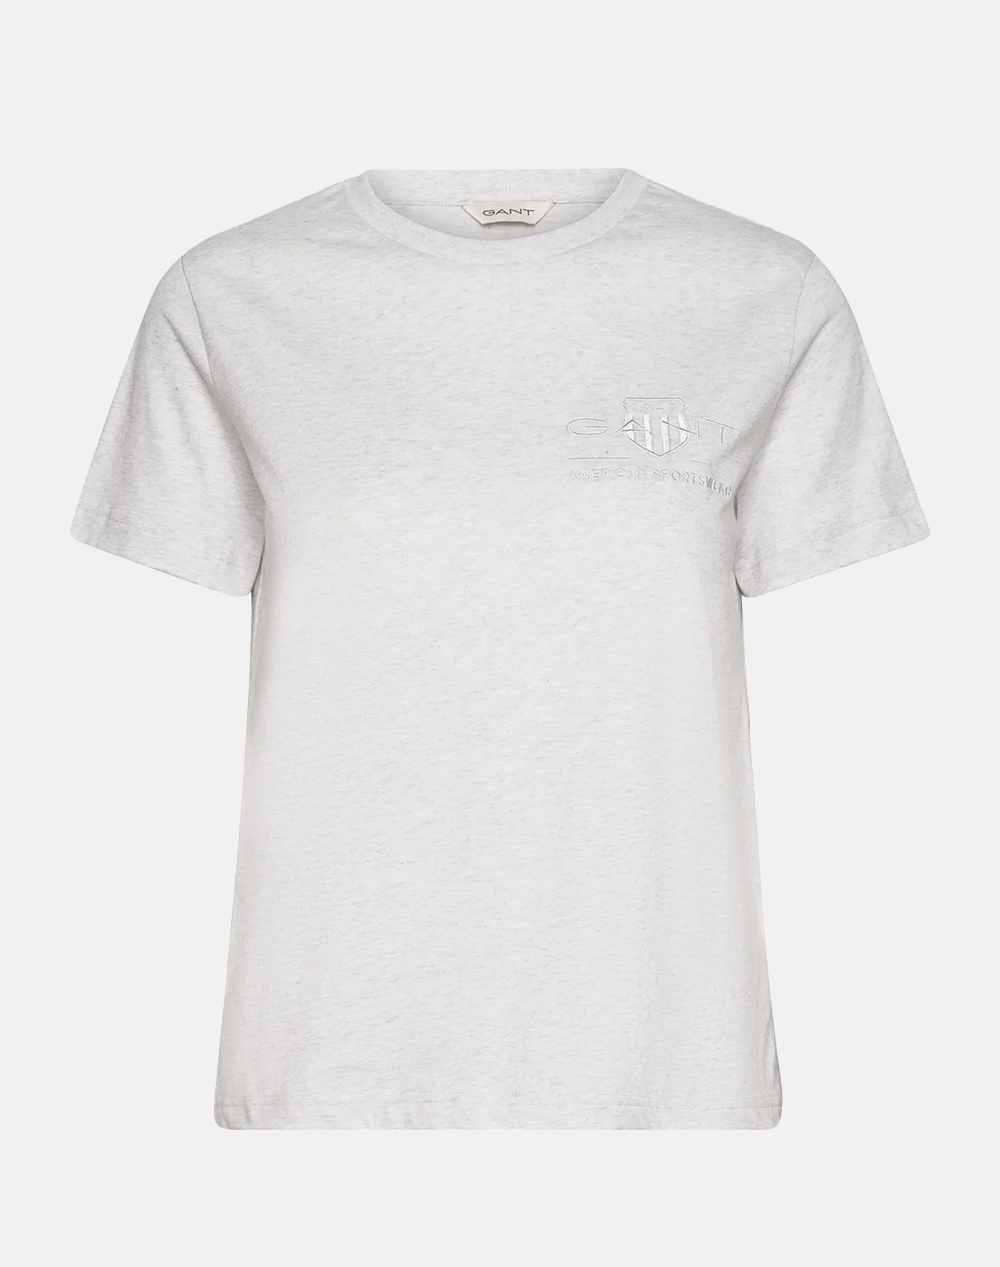 Γυναικεία t-shirt σε κανονική γραμμή, κοντομάνικη, με στρογγυλή λαιμόκοψη και κέντημα λογότυπου στο στήθος. (Σύνθεση: 100% Βαμβάκι)